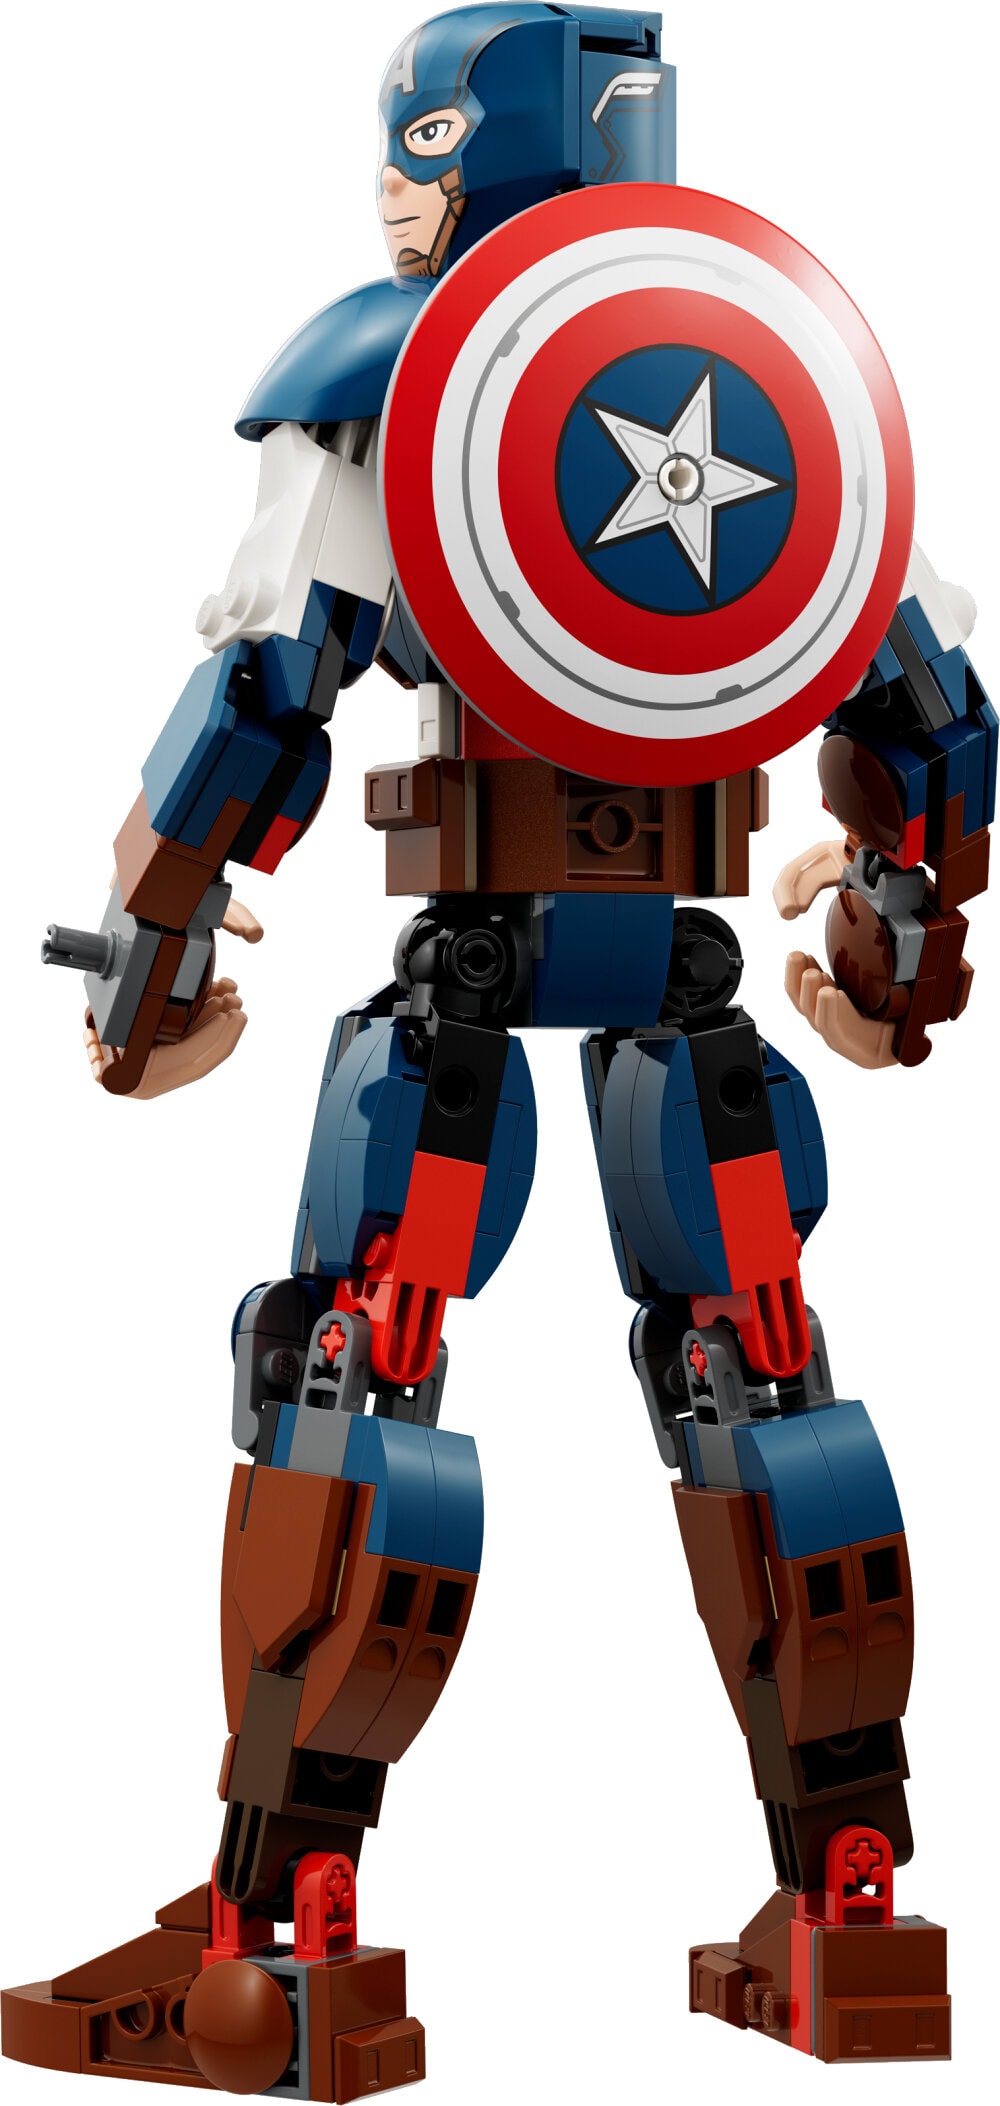 LEGO Avengers - Byg selv-figur af Captain America 8+